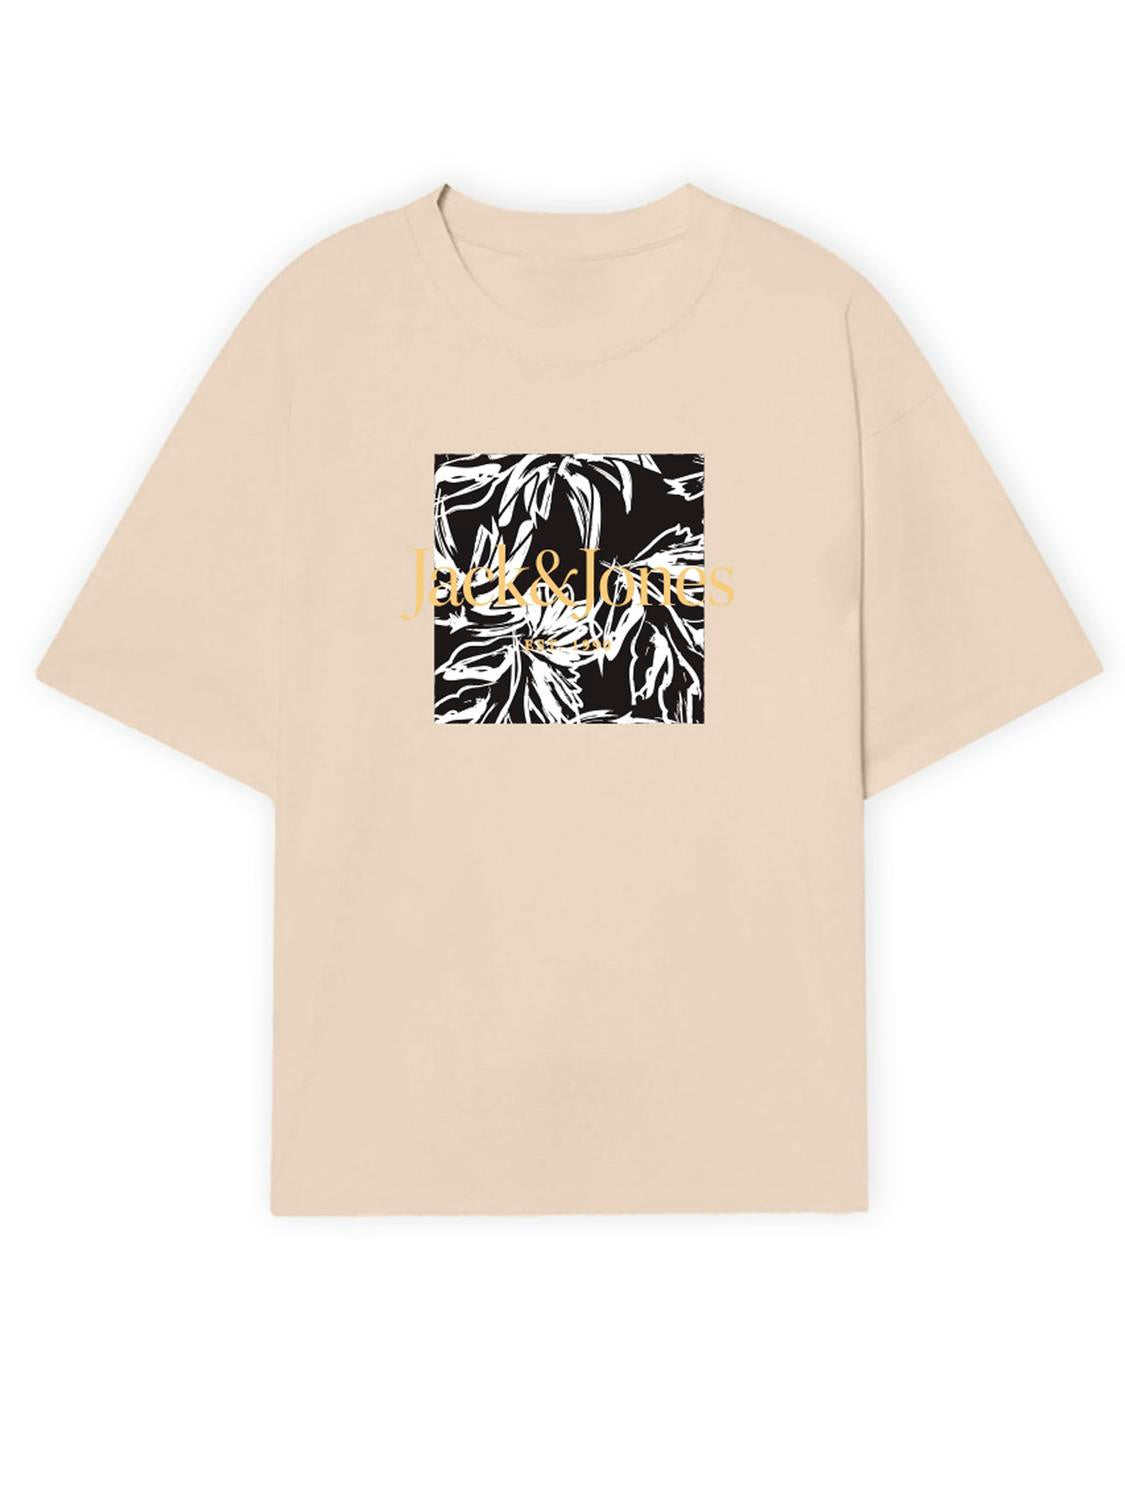 JORLAFAYETTE T-Shirt - Buttercream